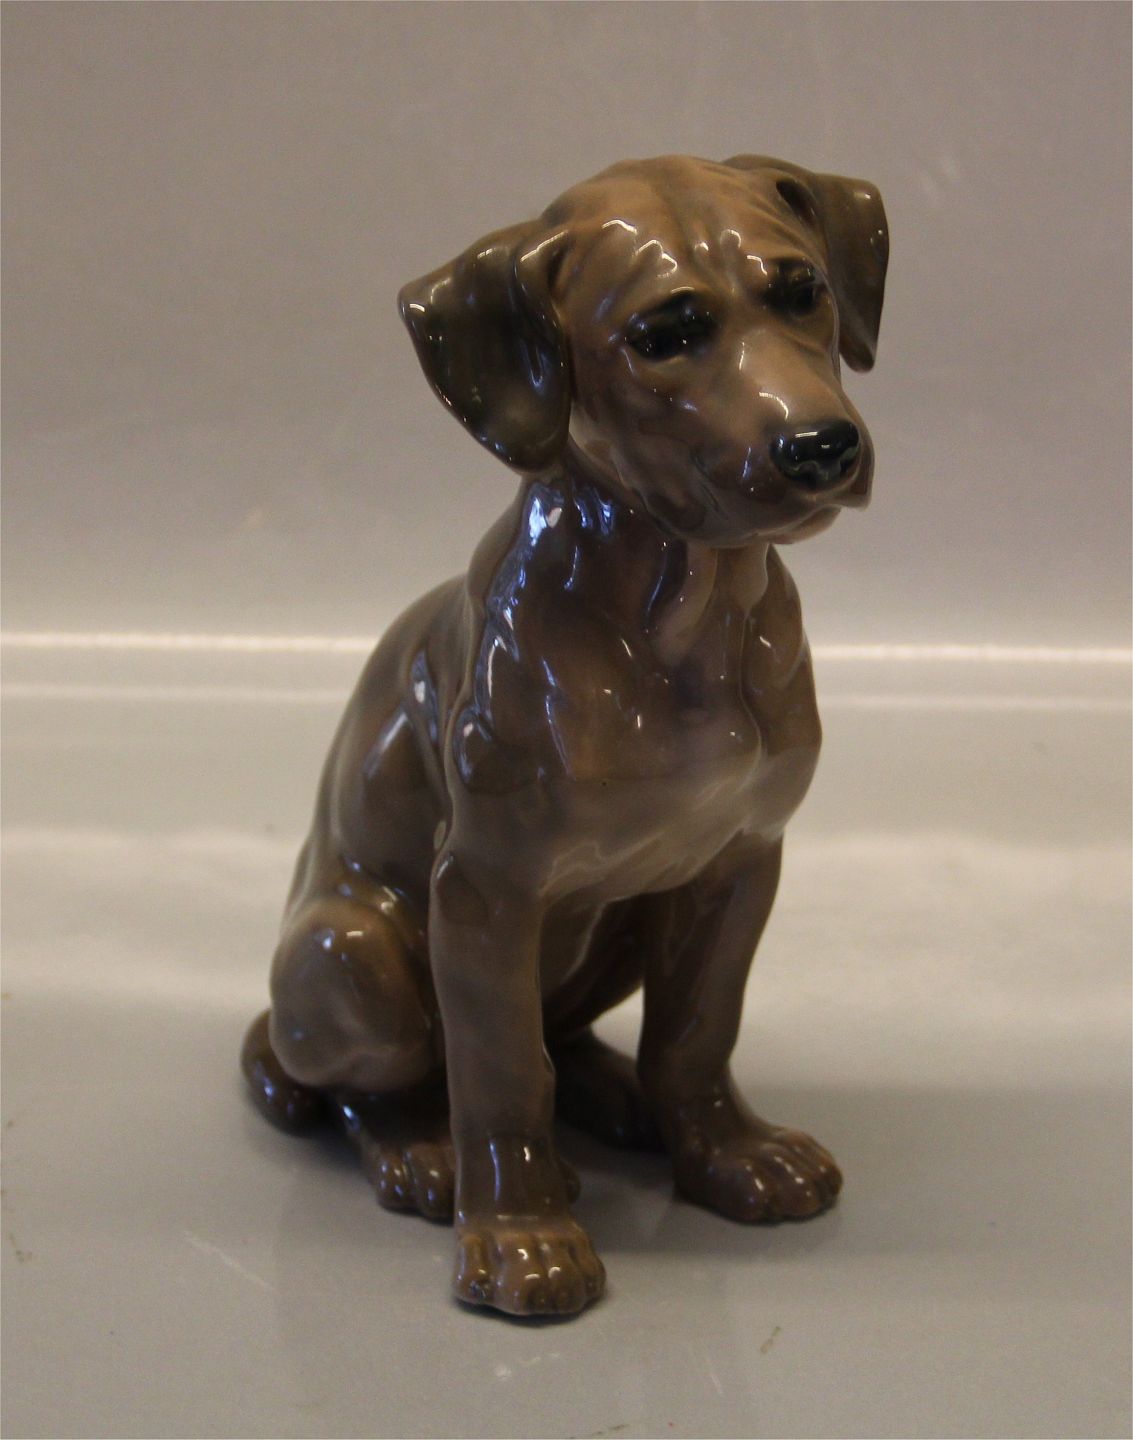 www.Antikvitet.net - B&G figure B&G Siddende hundgravhund ? Broholmer? 19 cm